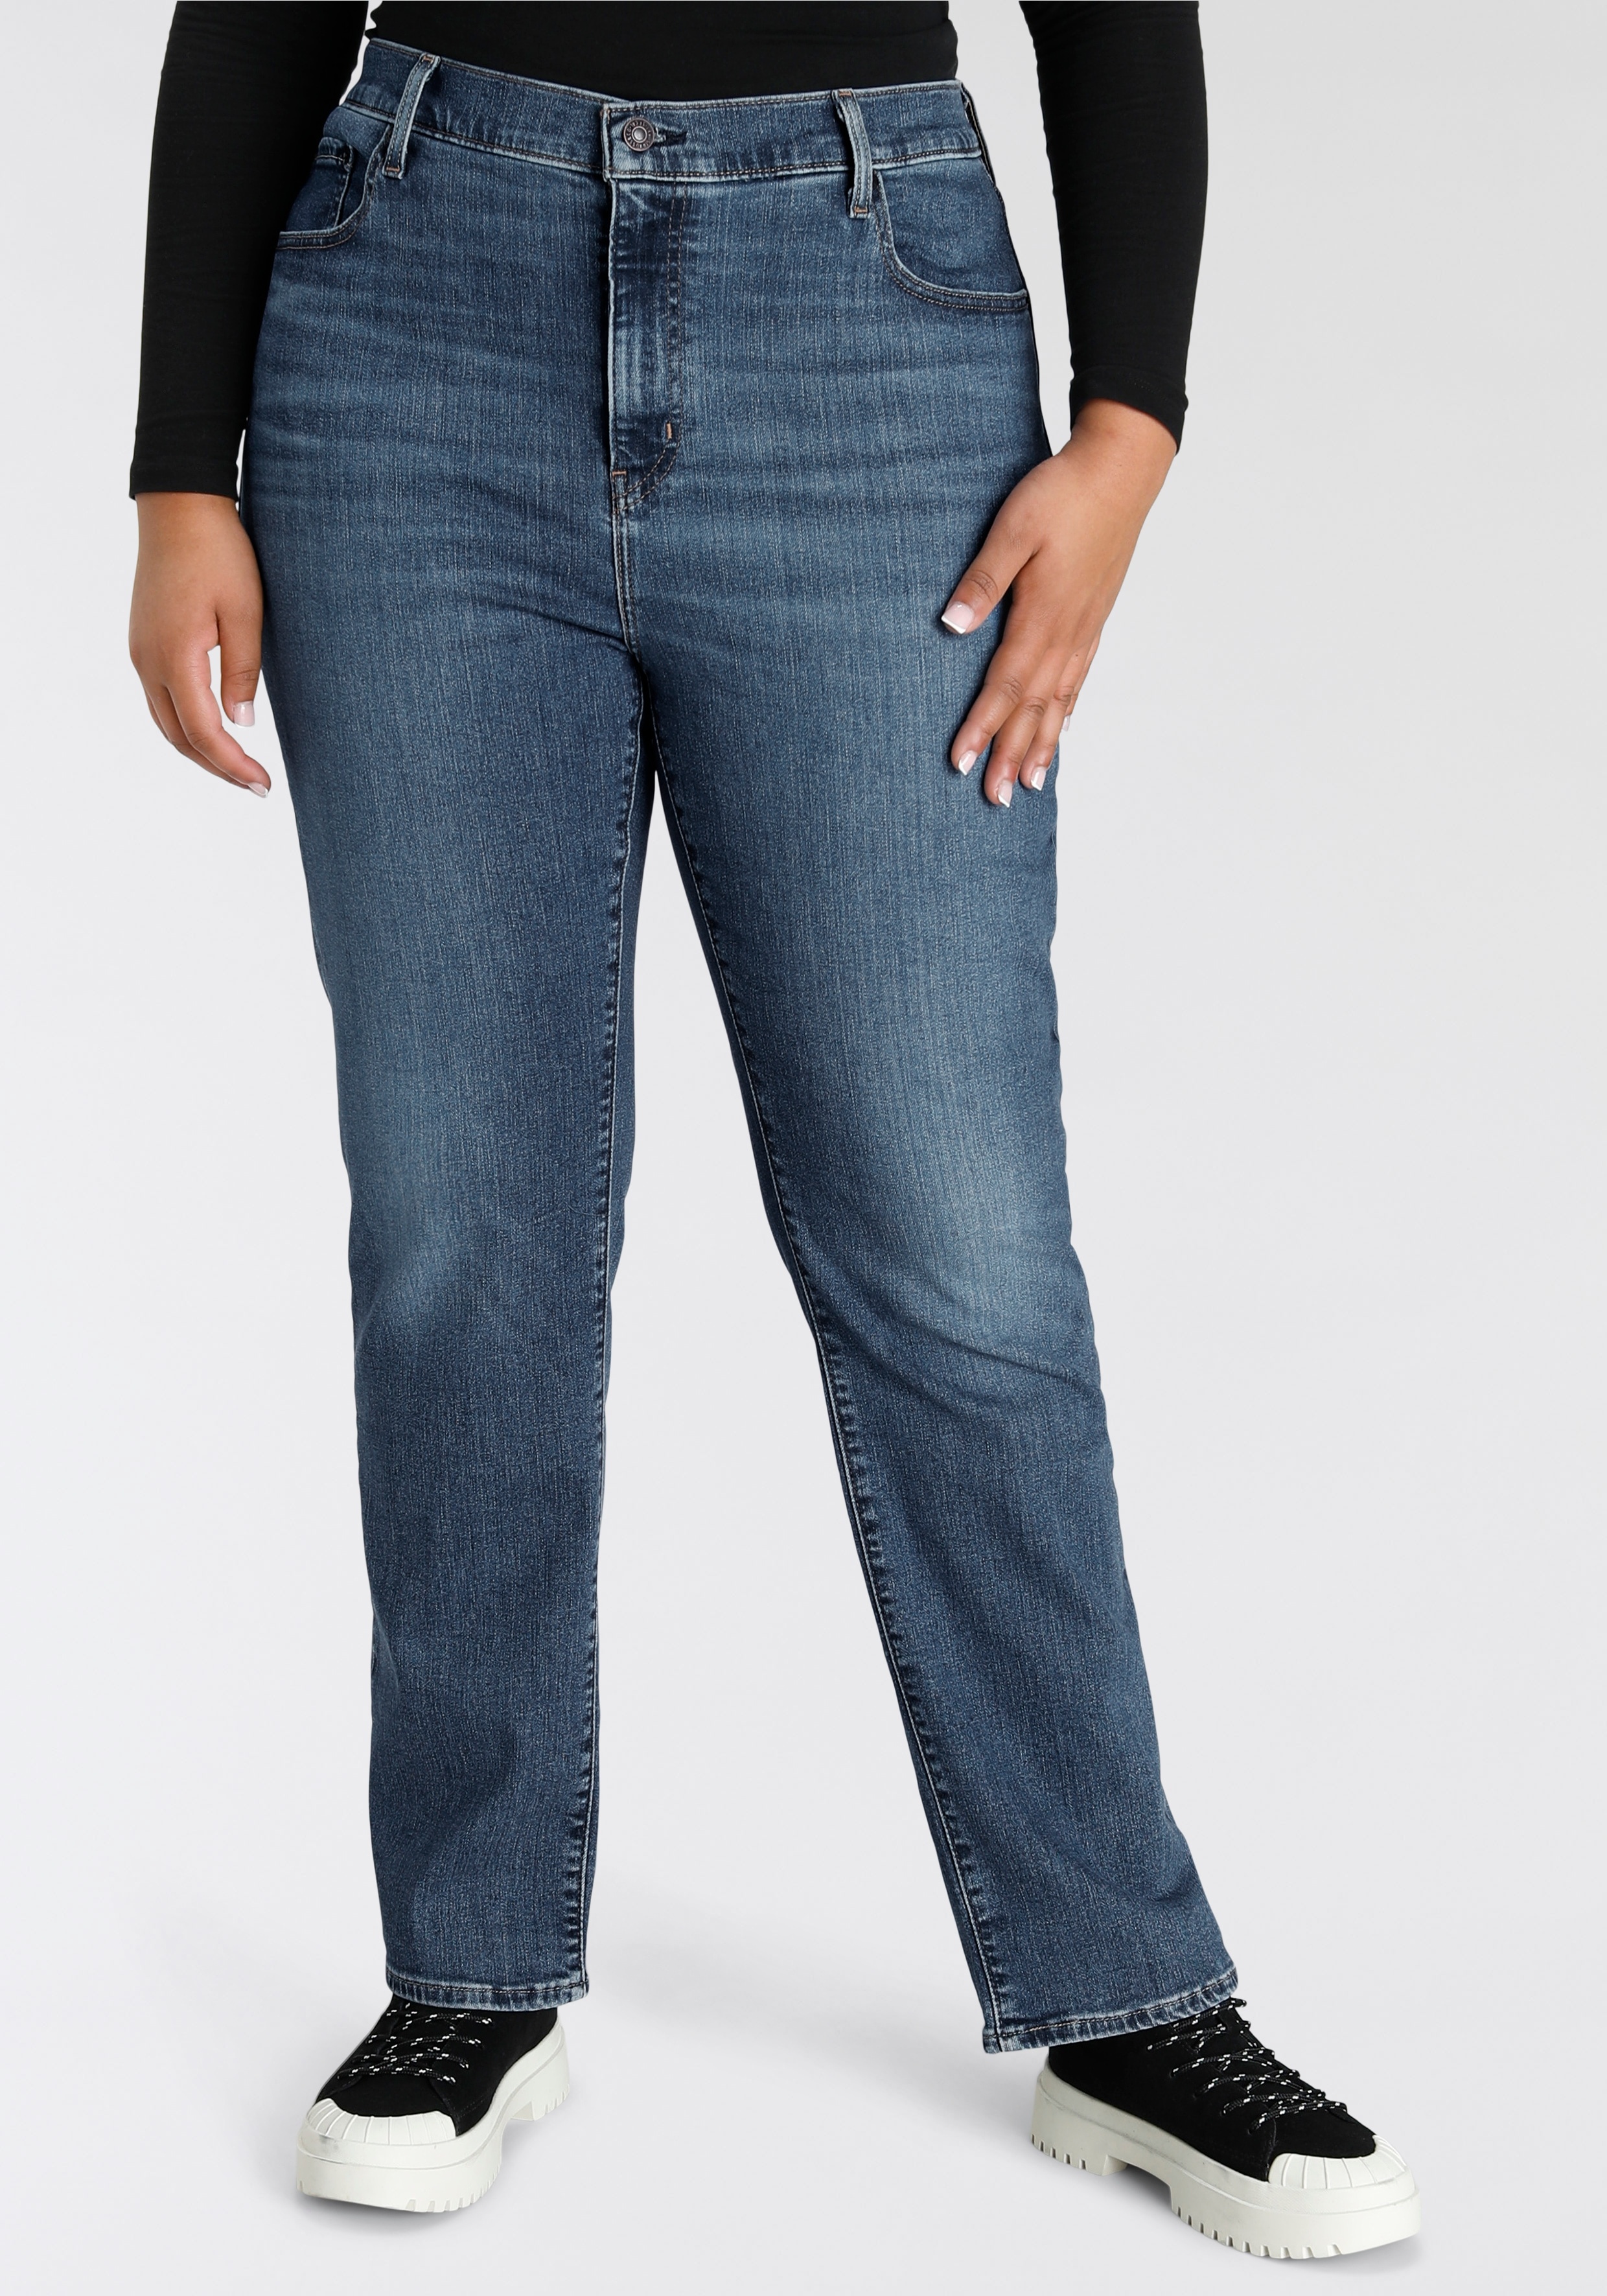 Straight-Jeans LEVI'S PLUS "724 PL HR STRAIGHT" Gr. 22 (52), Länge 34, blau (medium indigo worn in) Damen Jeans Gerade